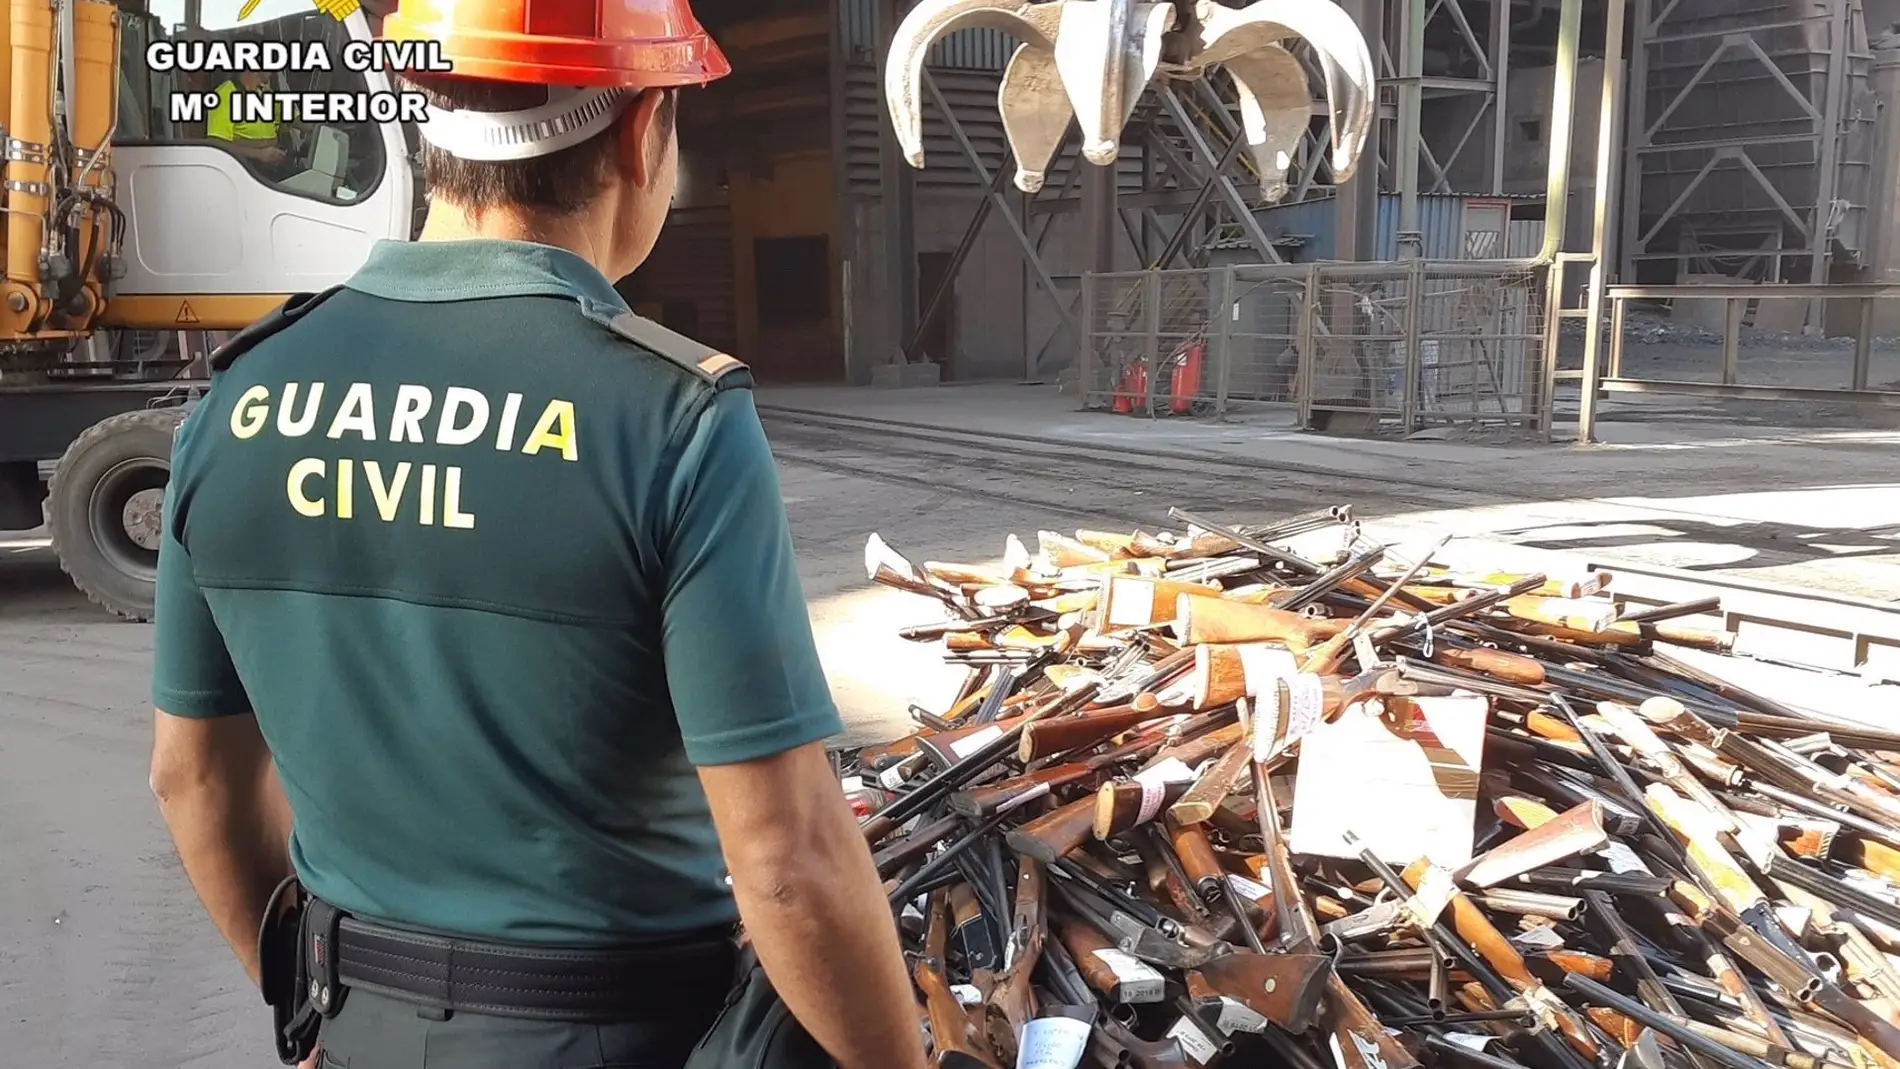 La Guardia Civil de Cáceres destruía en marzo un total de 800 armas que tenía en depósito